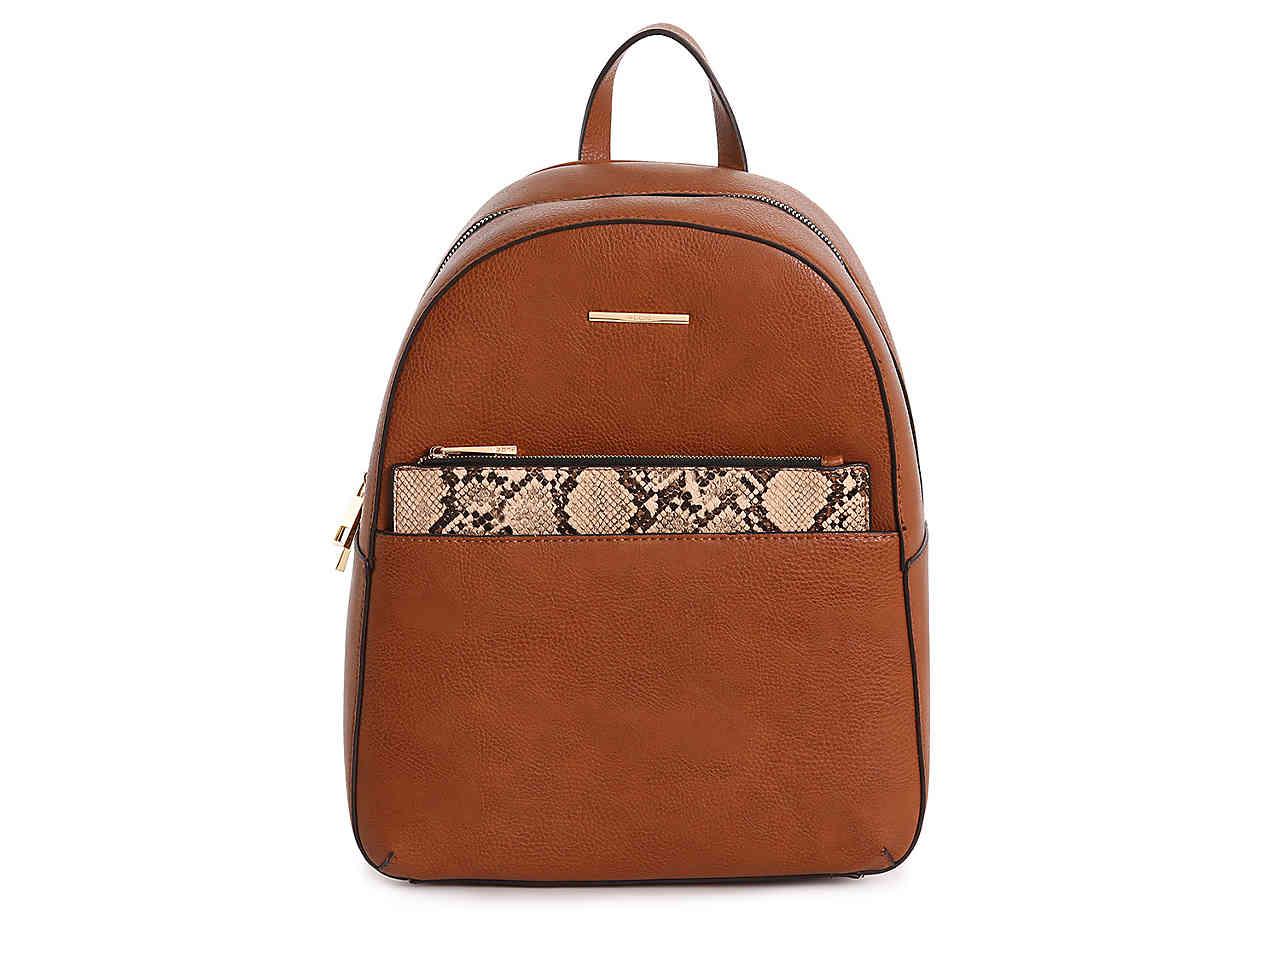 ALDO Hilisa Backpack in Cognac (Brown) | Lyst